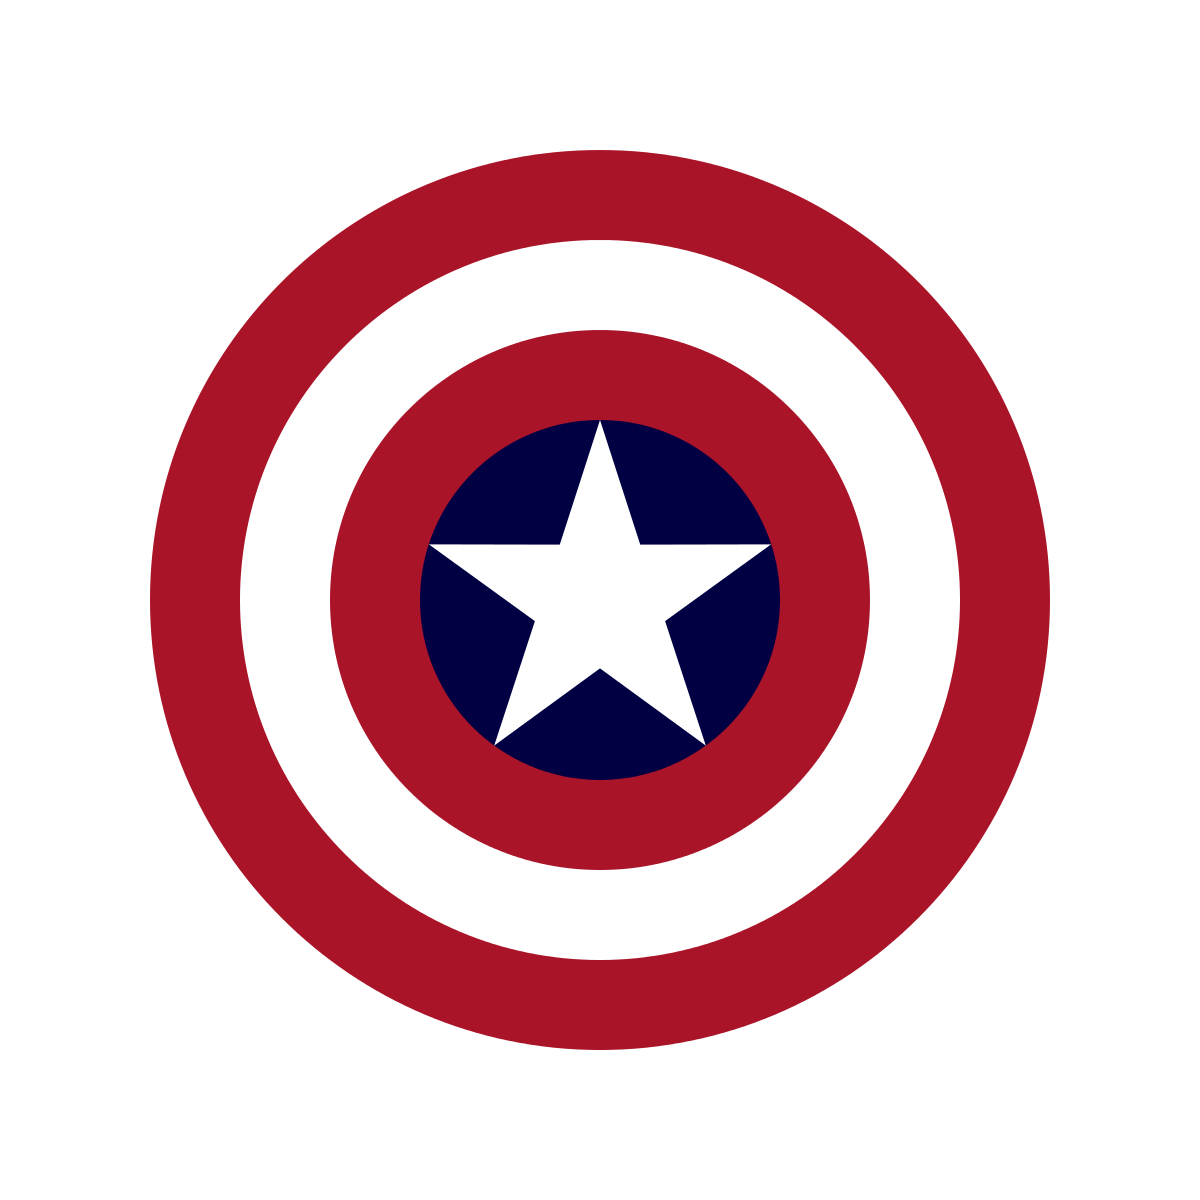 Broken Blue Circle Logo - Captain America's shield